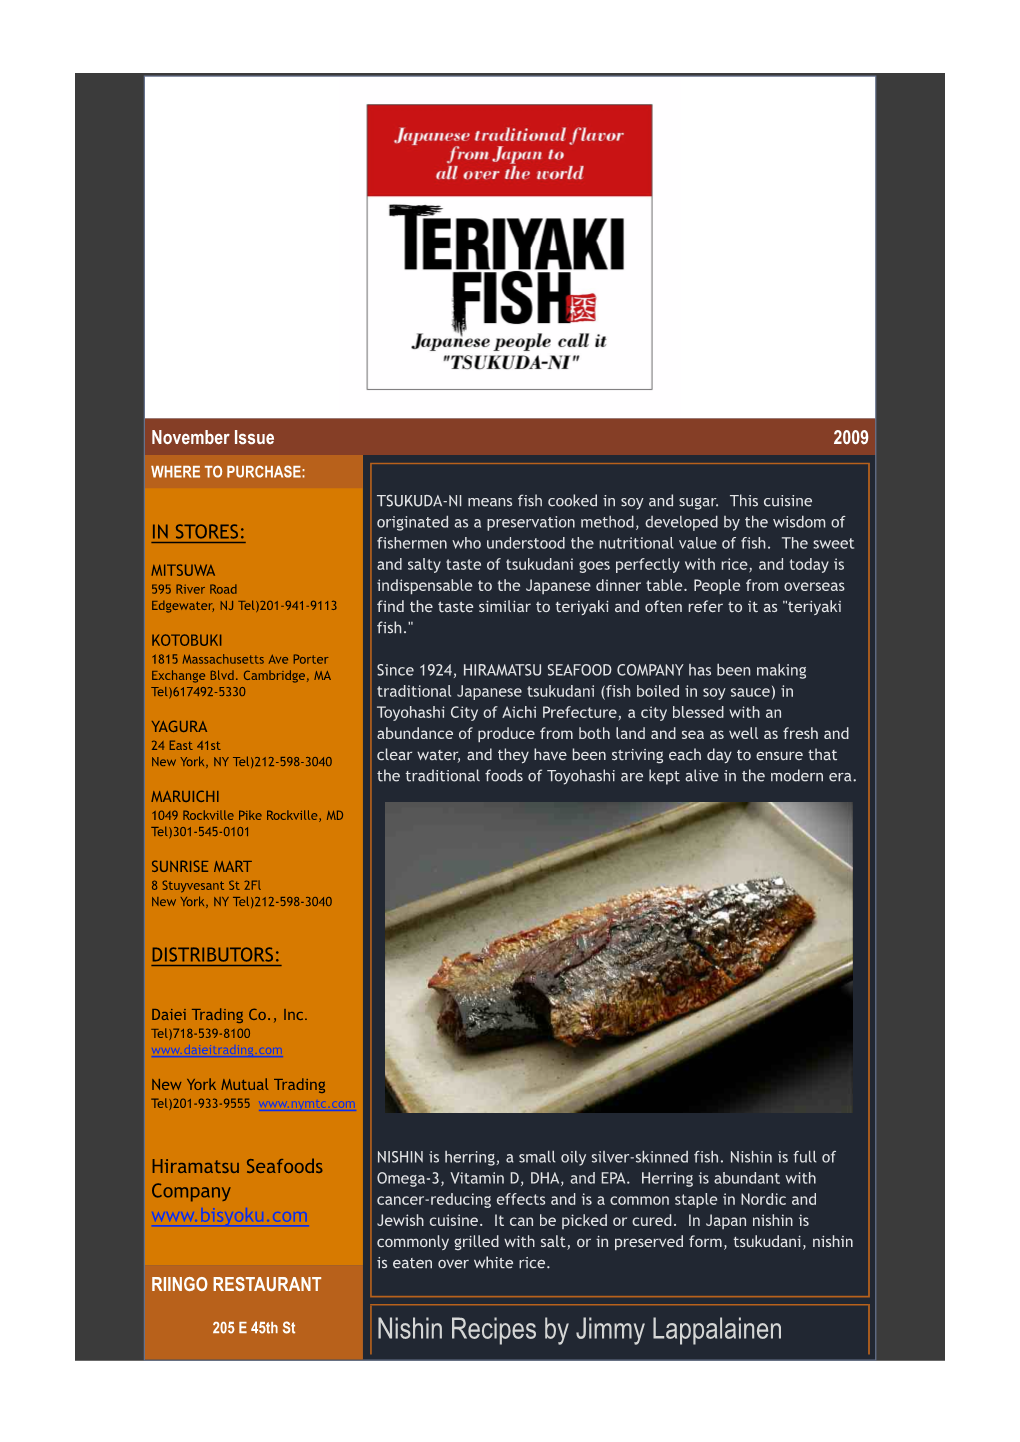 "Tsukudani" Recipes by Chef Jimmy Lappalainen of Riingo